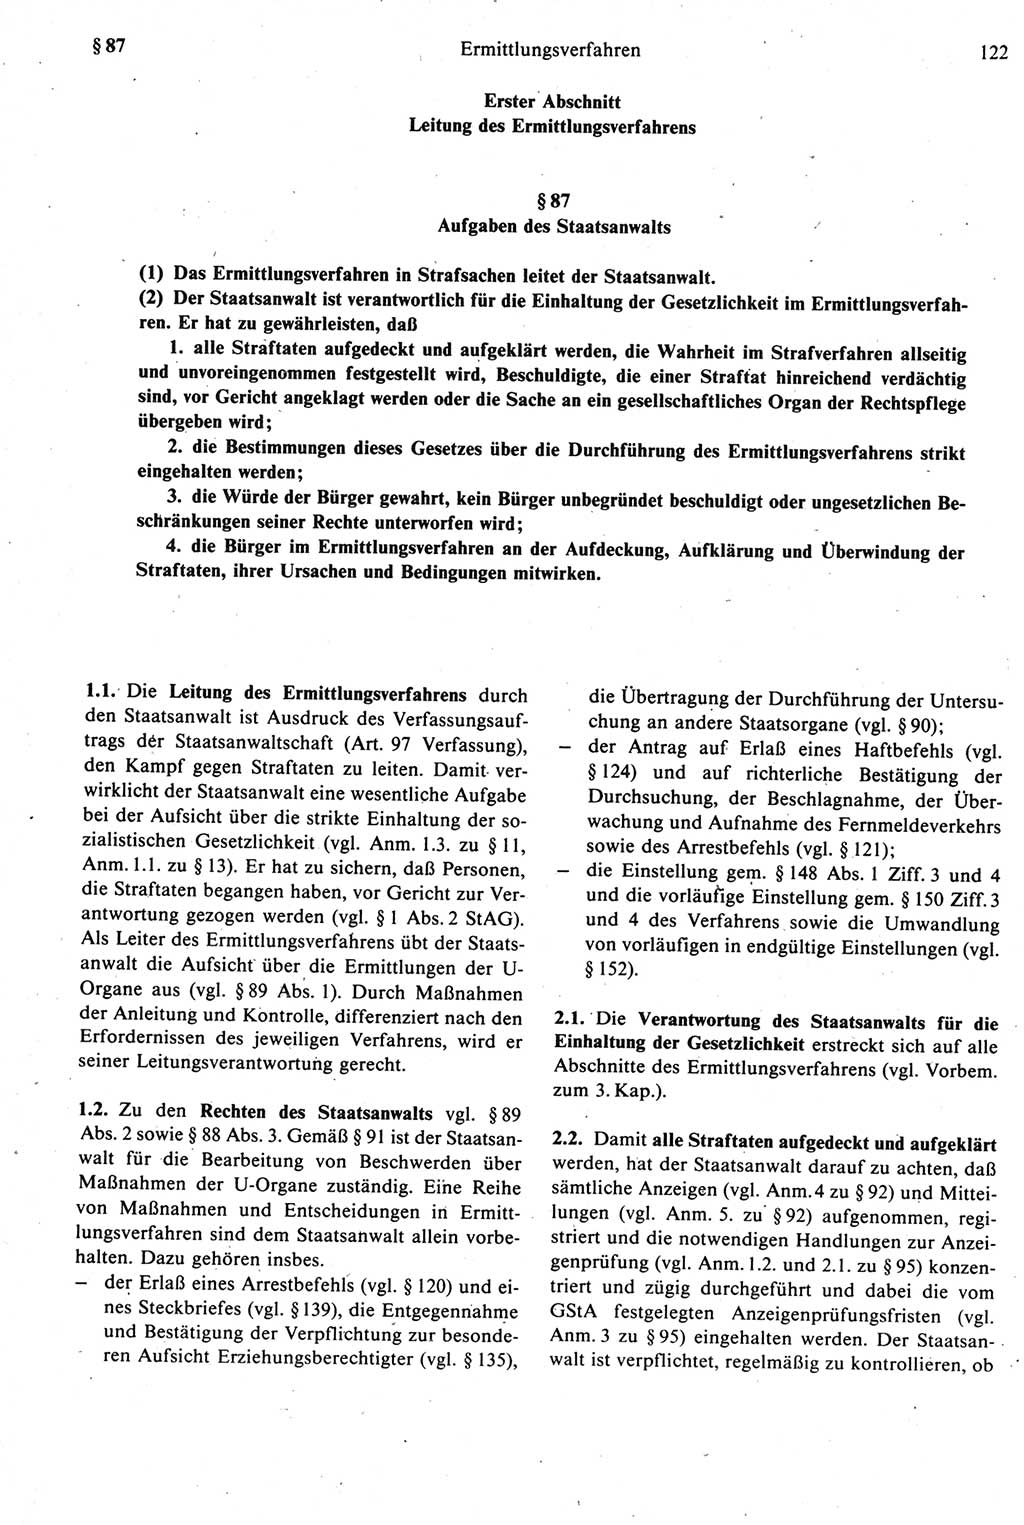 Strafprozeßrecht der DDR [Deutsche Demokratische Republik], Kommentar zur Strafprozeßordnung (StPO) 1987, Seite 122 (Strafprozeßr. DDR Komm. StPO 1987, S. 122)